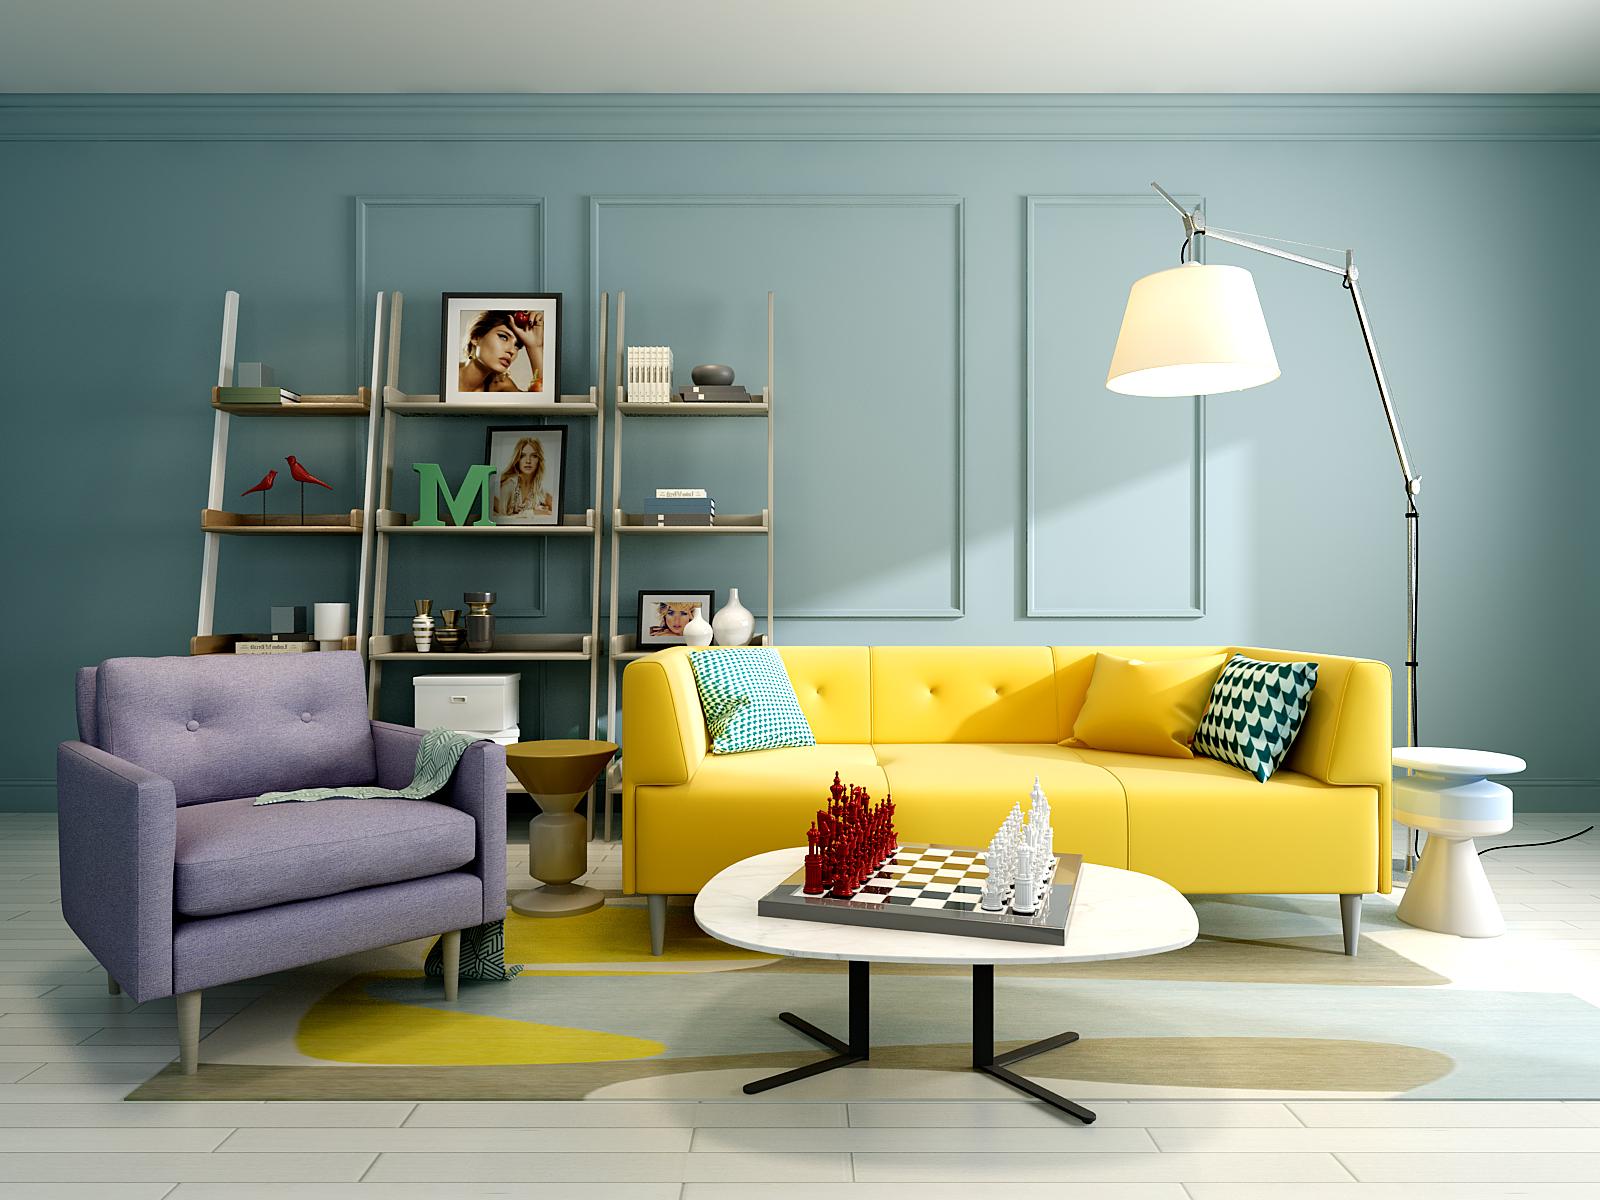 选择一款形态优美,配色大气的沙发,或是给家里某个角落添置一组设计感